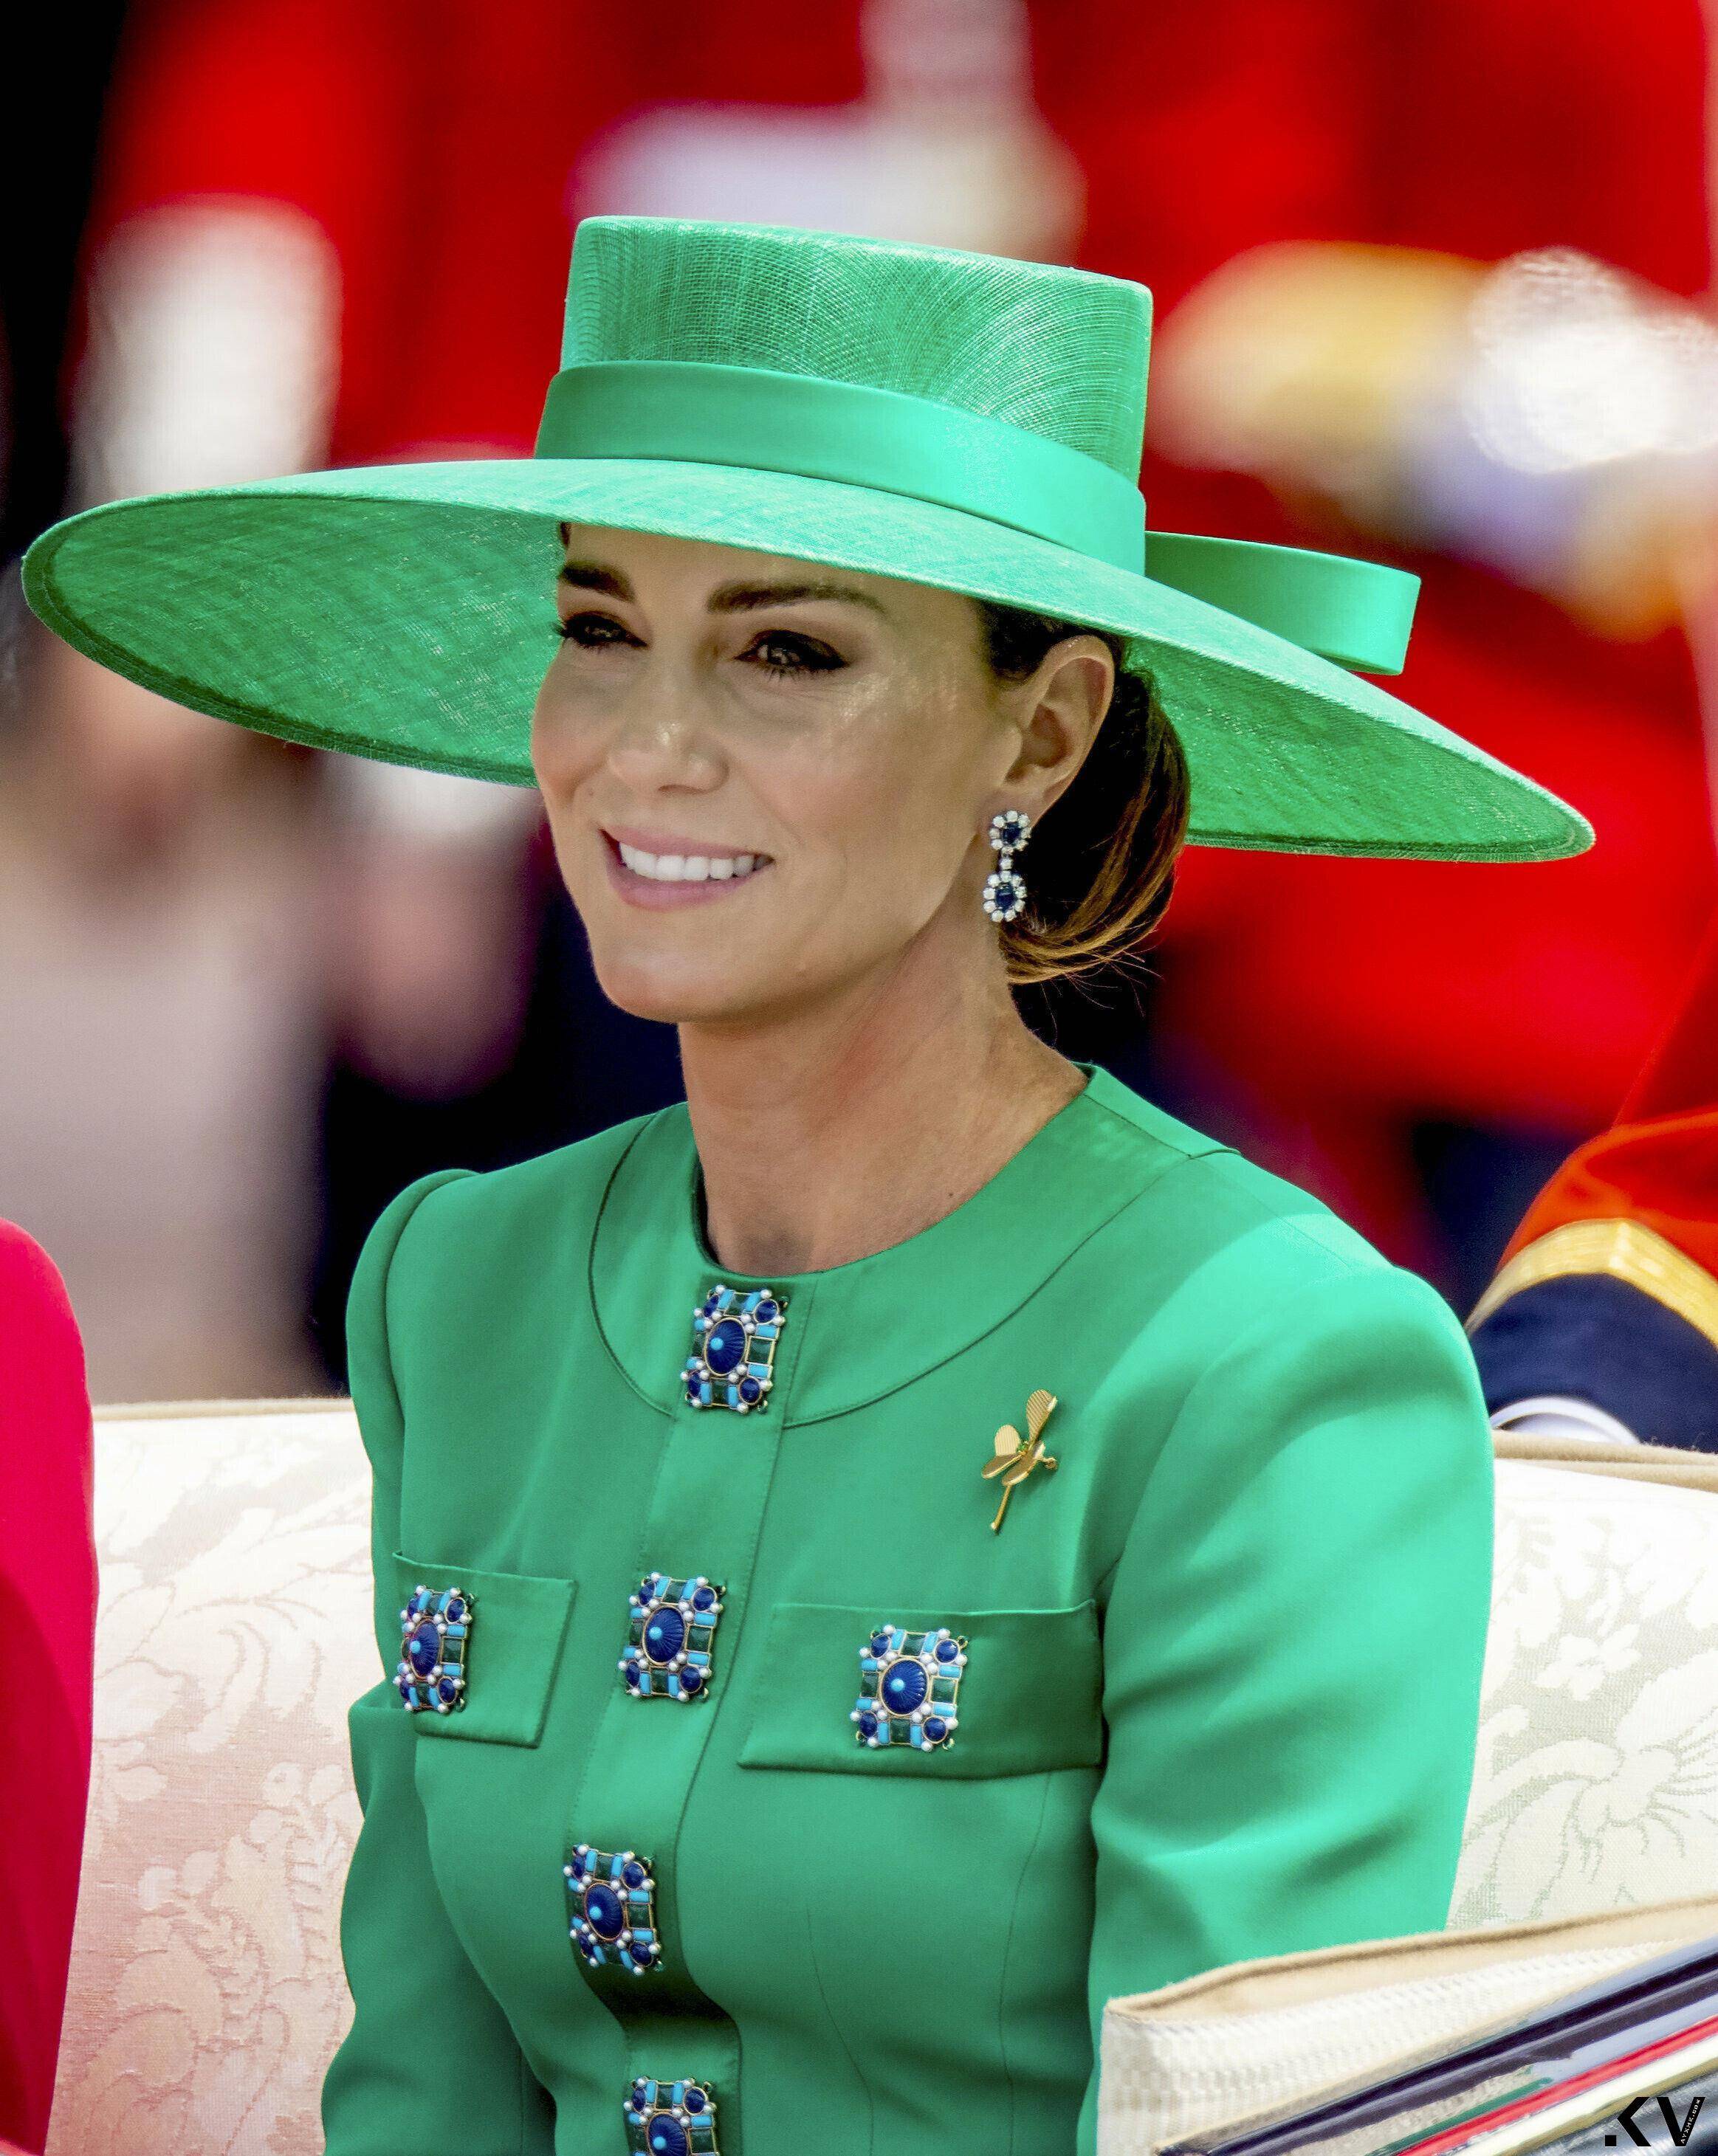 凯特王妃11万绿衣凸显“爱尔兰卫队上校”身分　么儿阅兵敬礼萌翻 名人名流 图2张